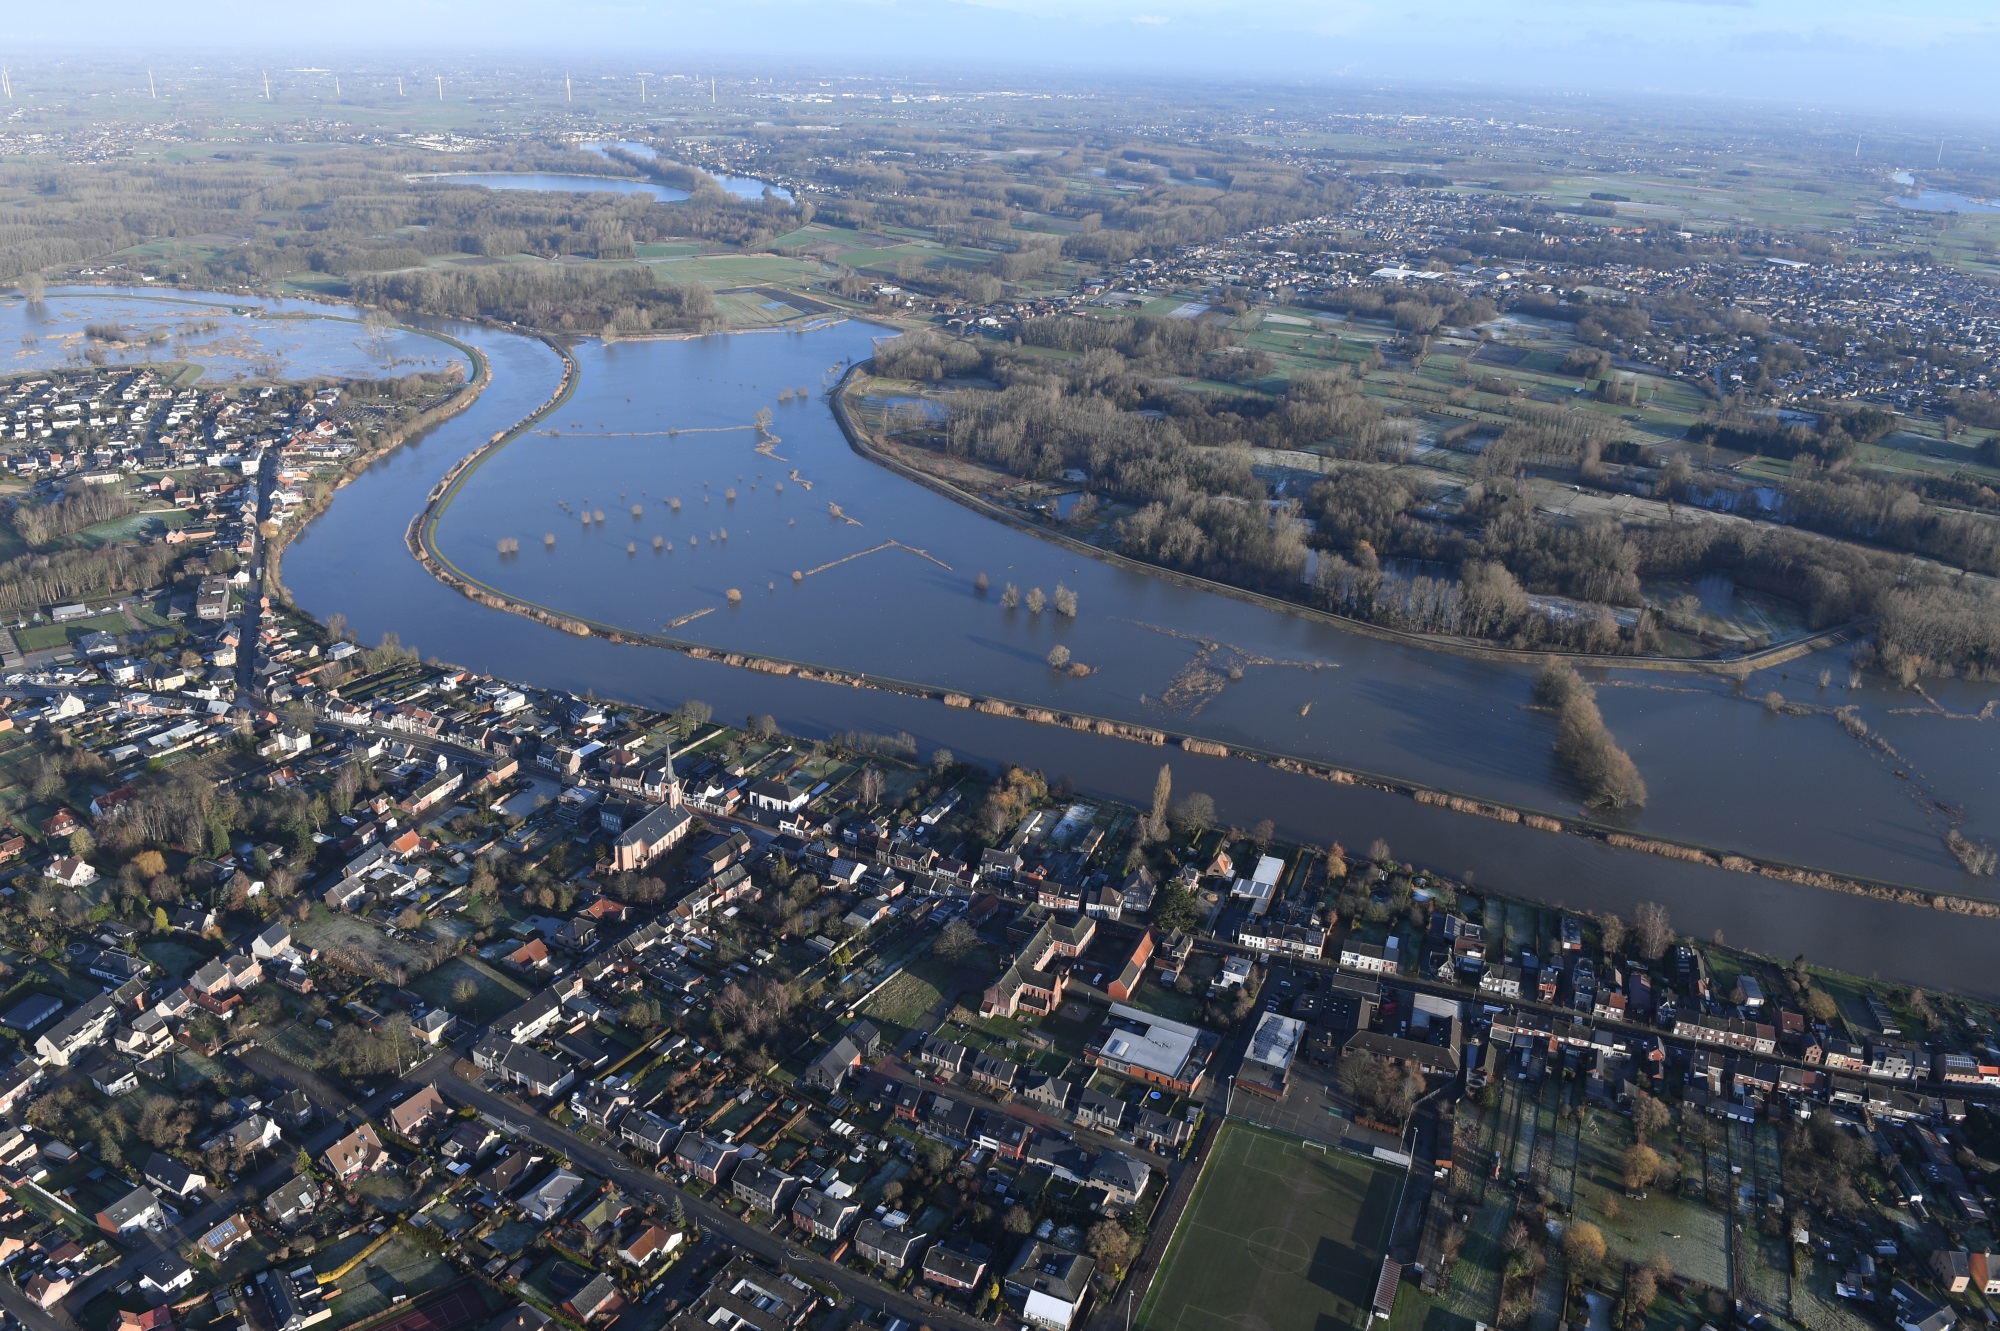 Overzichtsfoto van een overstroomd natuurgebied naar de rivier. Aan de andere kant van de rivier staan woningen.